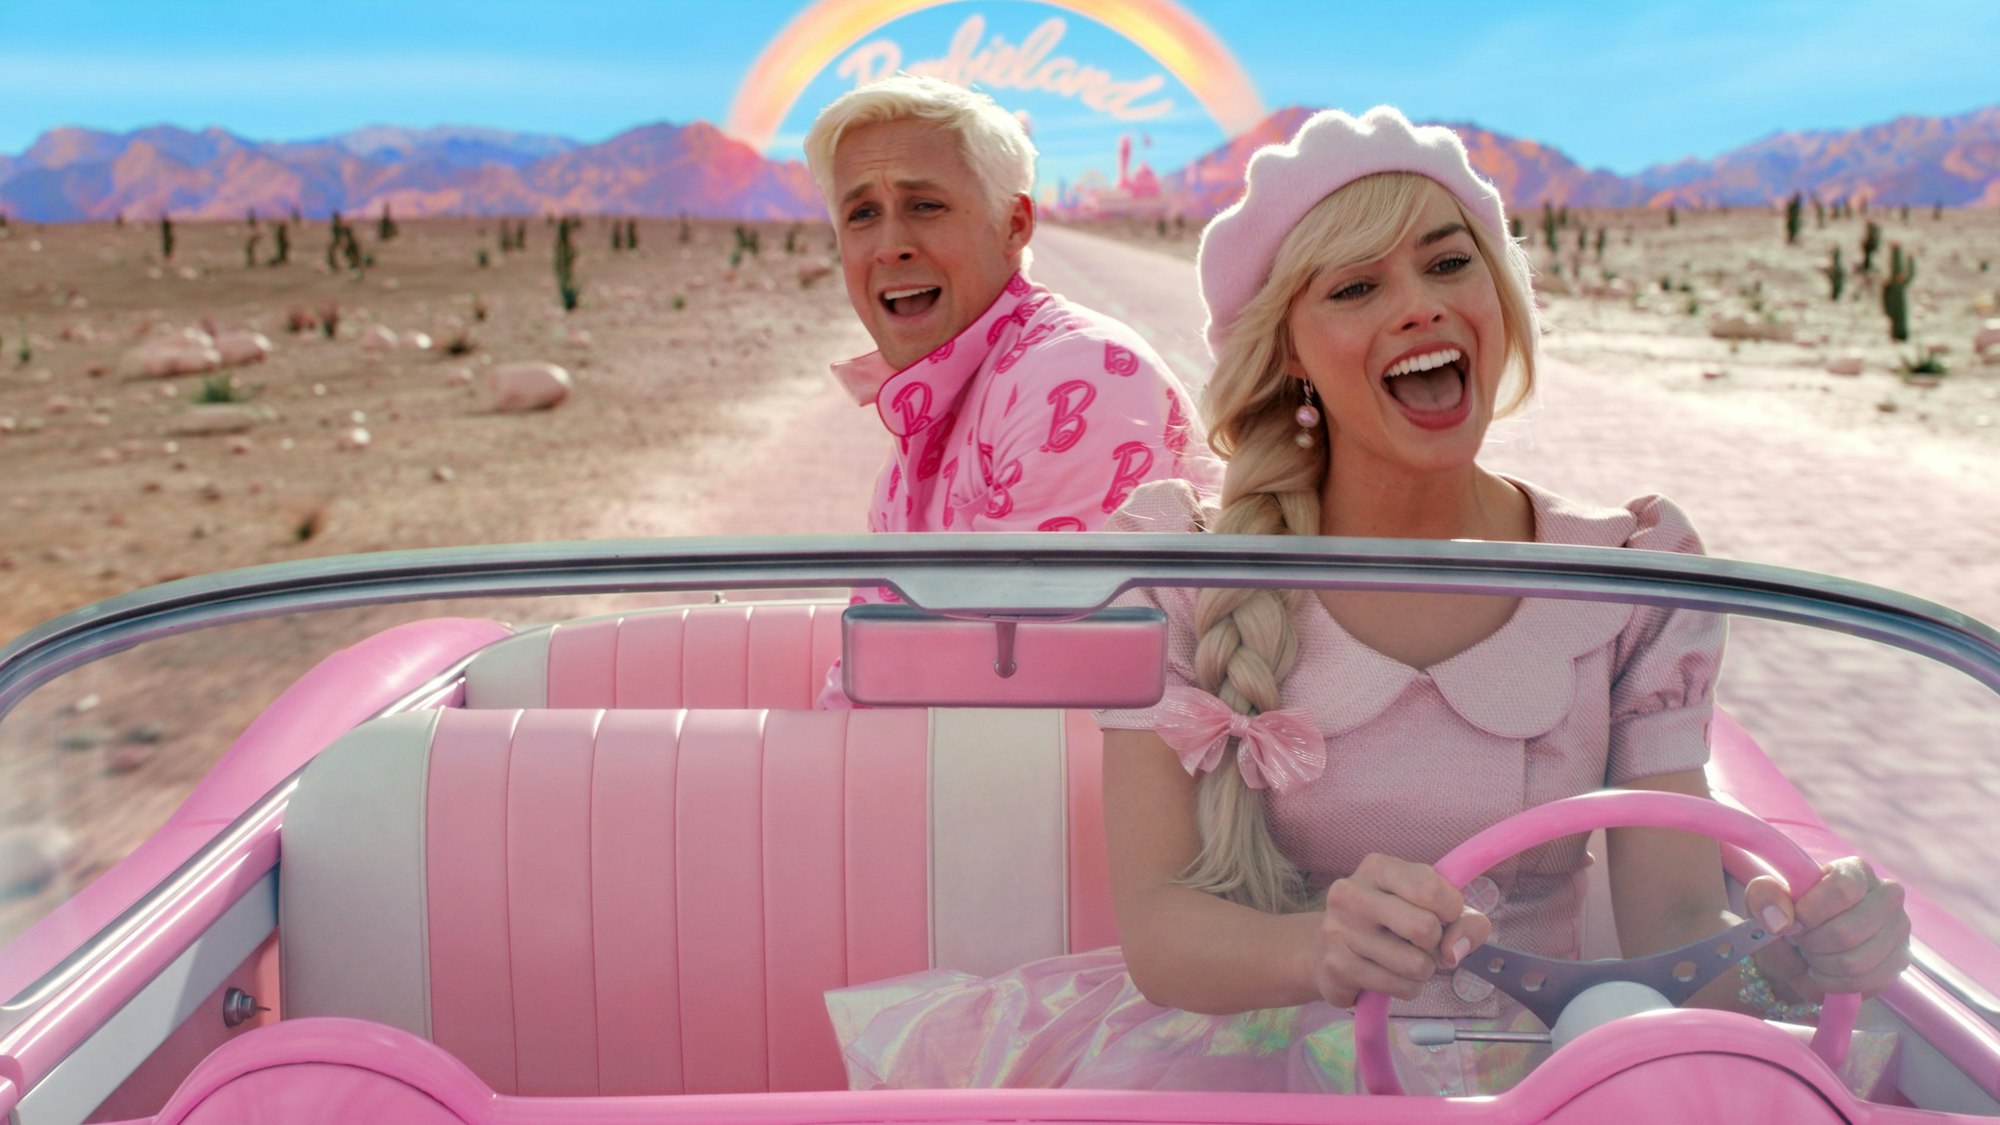 Ryan Gosling als Ken and Margot Robbie als Barbie in einer Szene der Films „Barbie“.